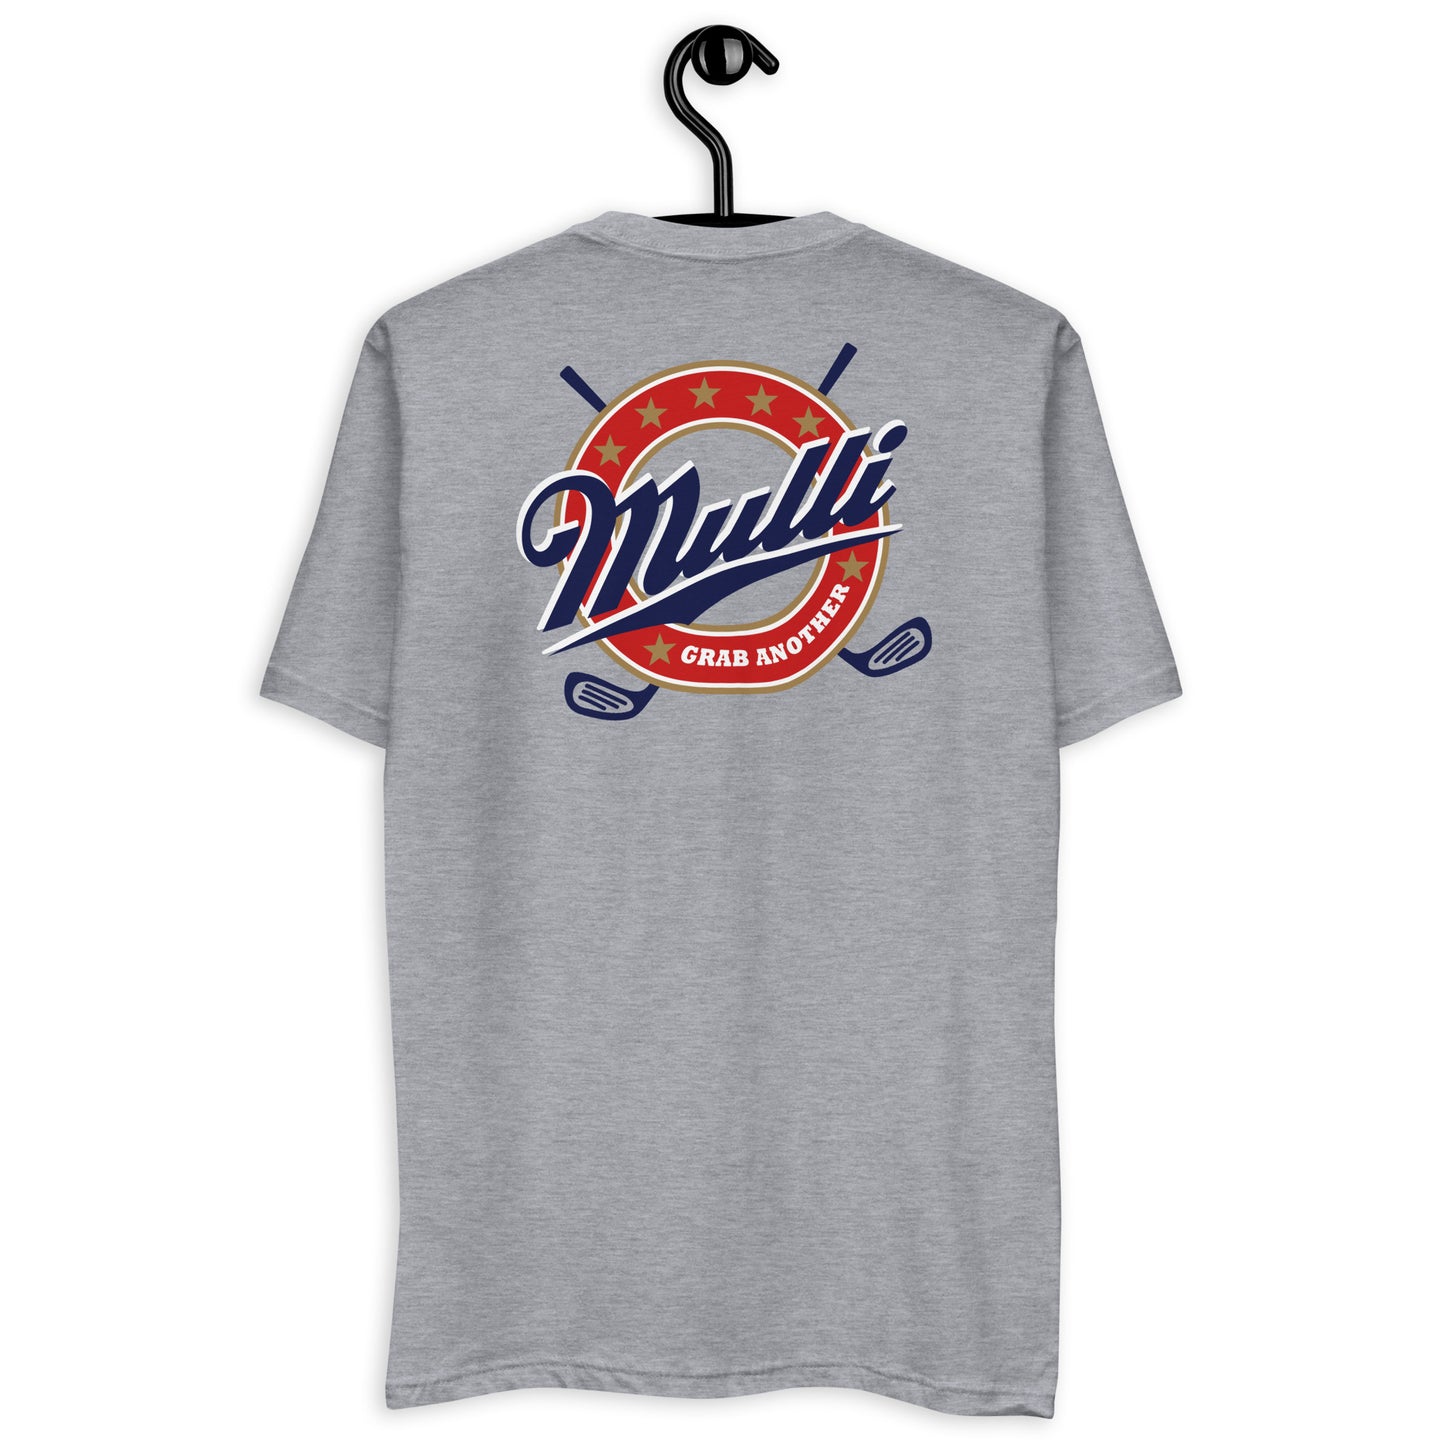 The Mulli Shirt - Short Sleeve T-shirt